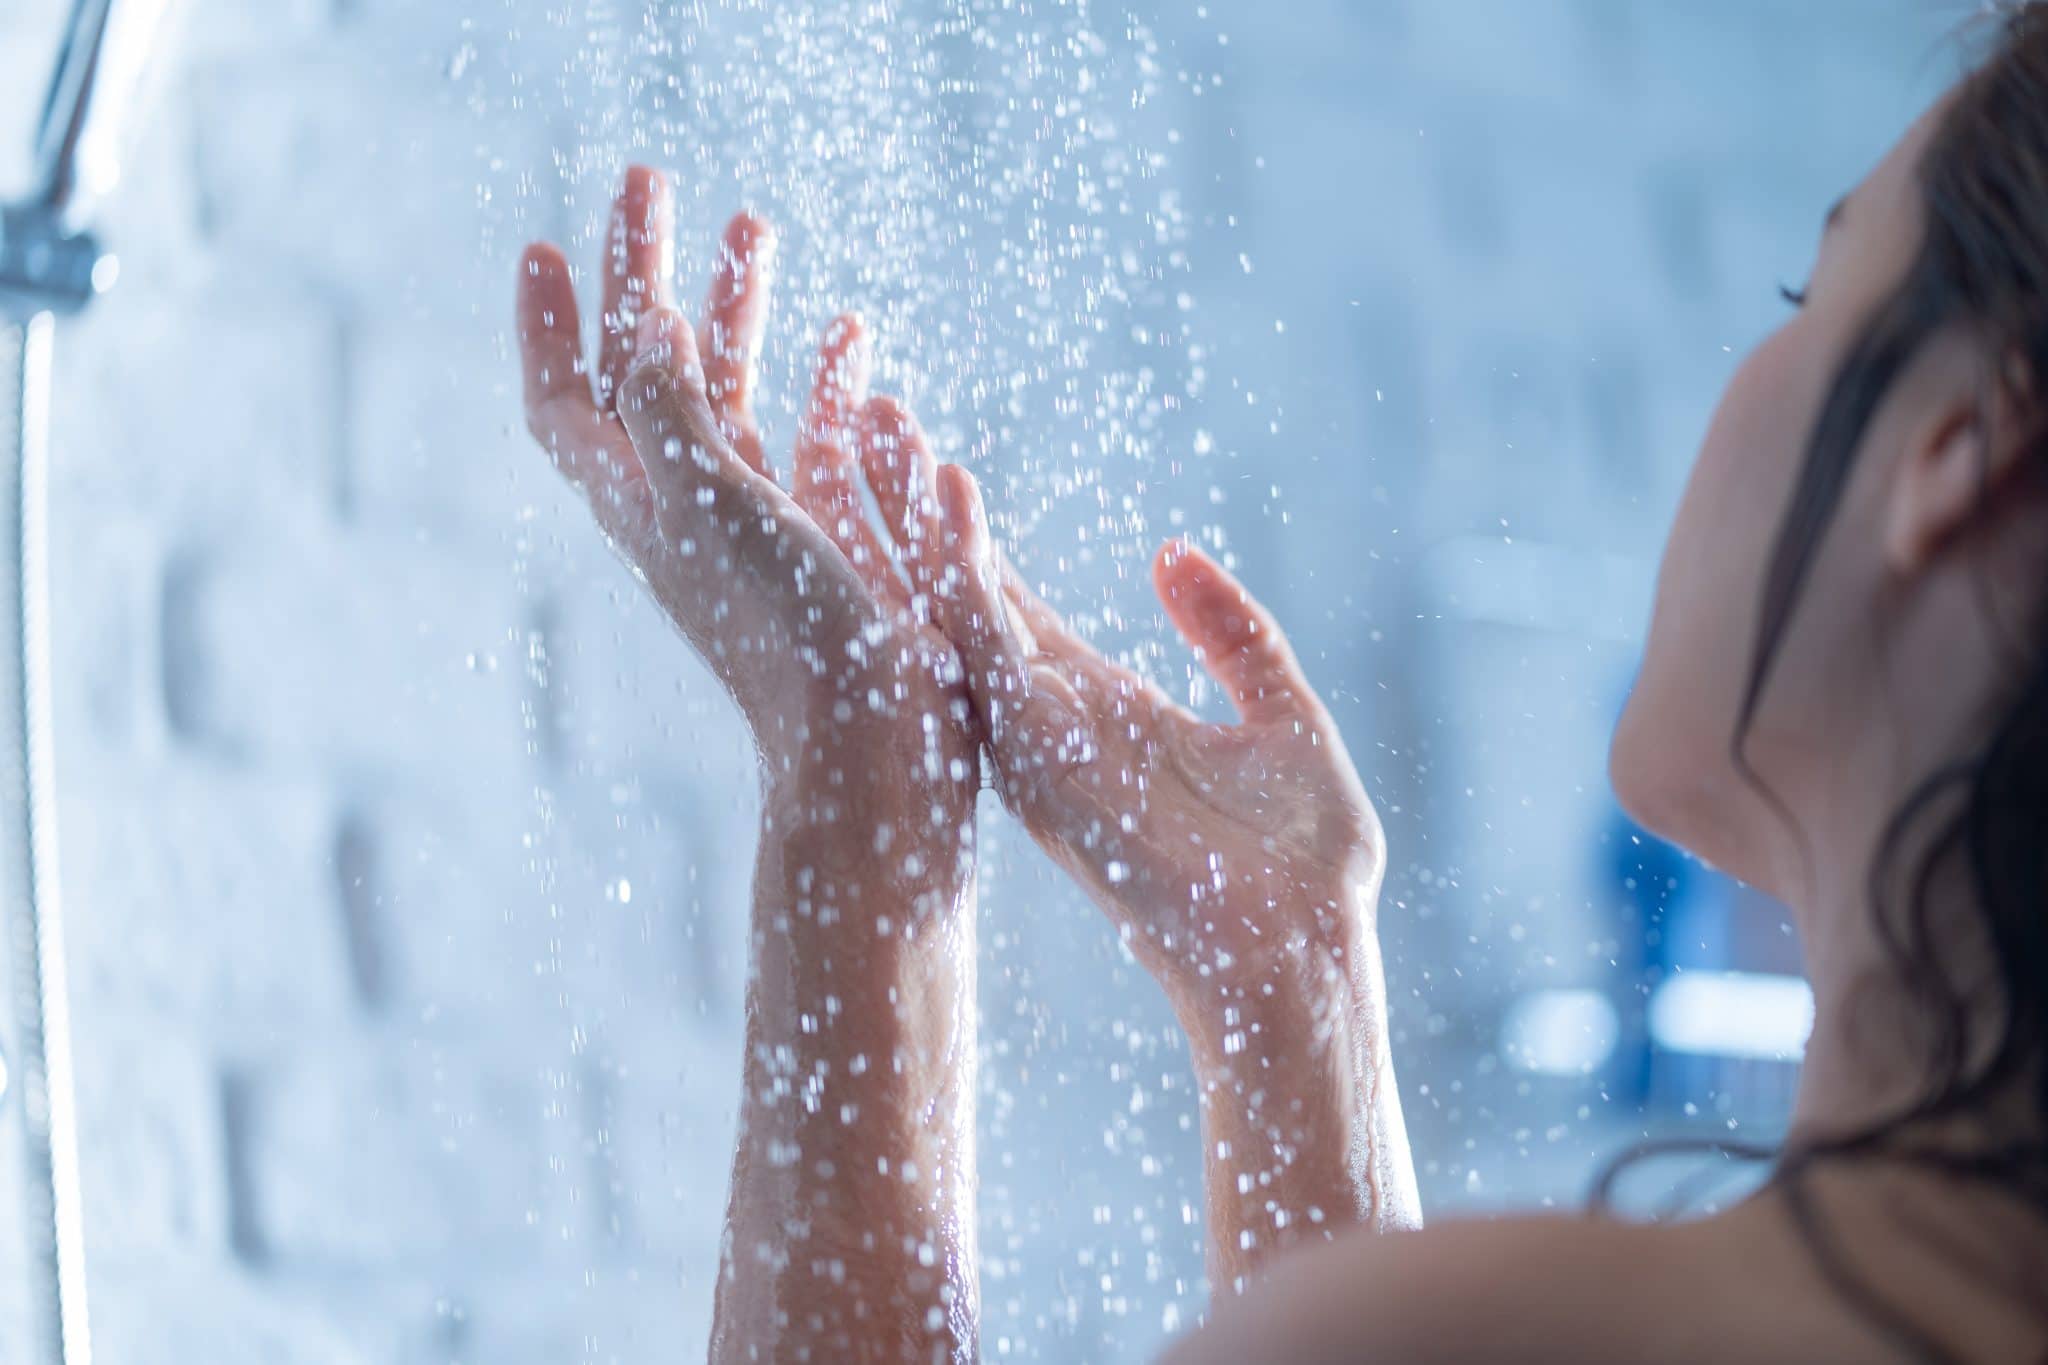 Ilya, des douches cycliques pour consommer moins d’eau